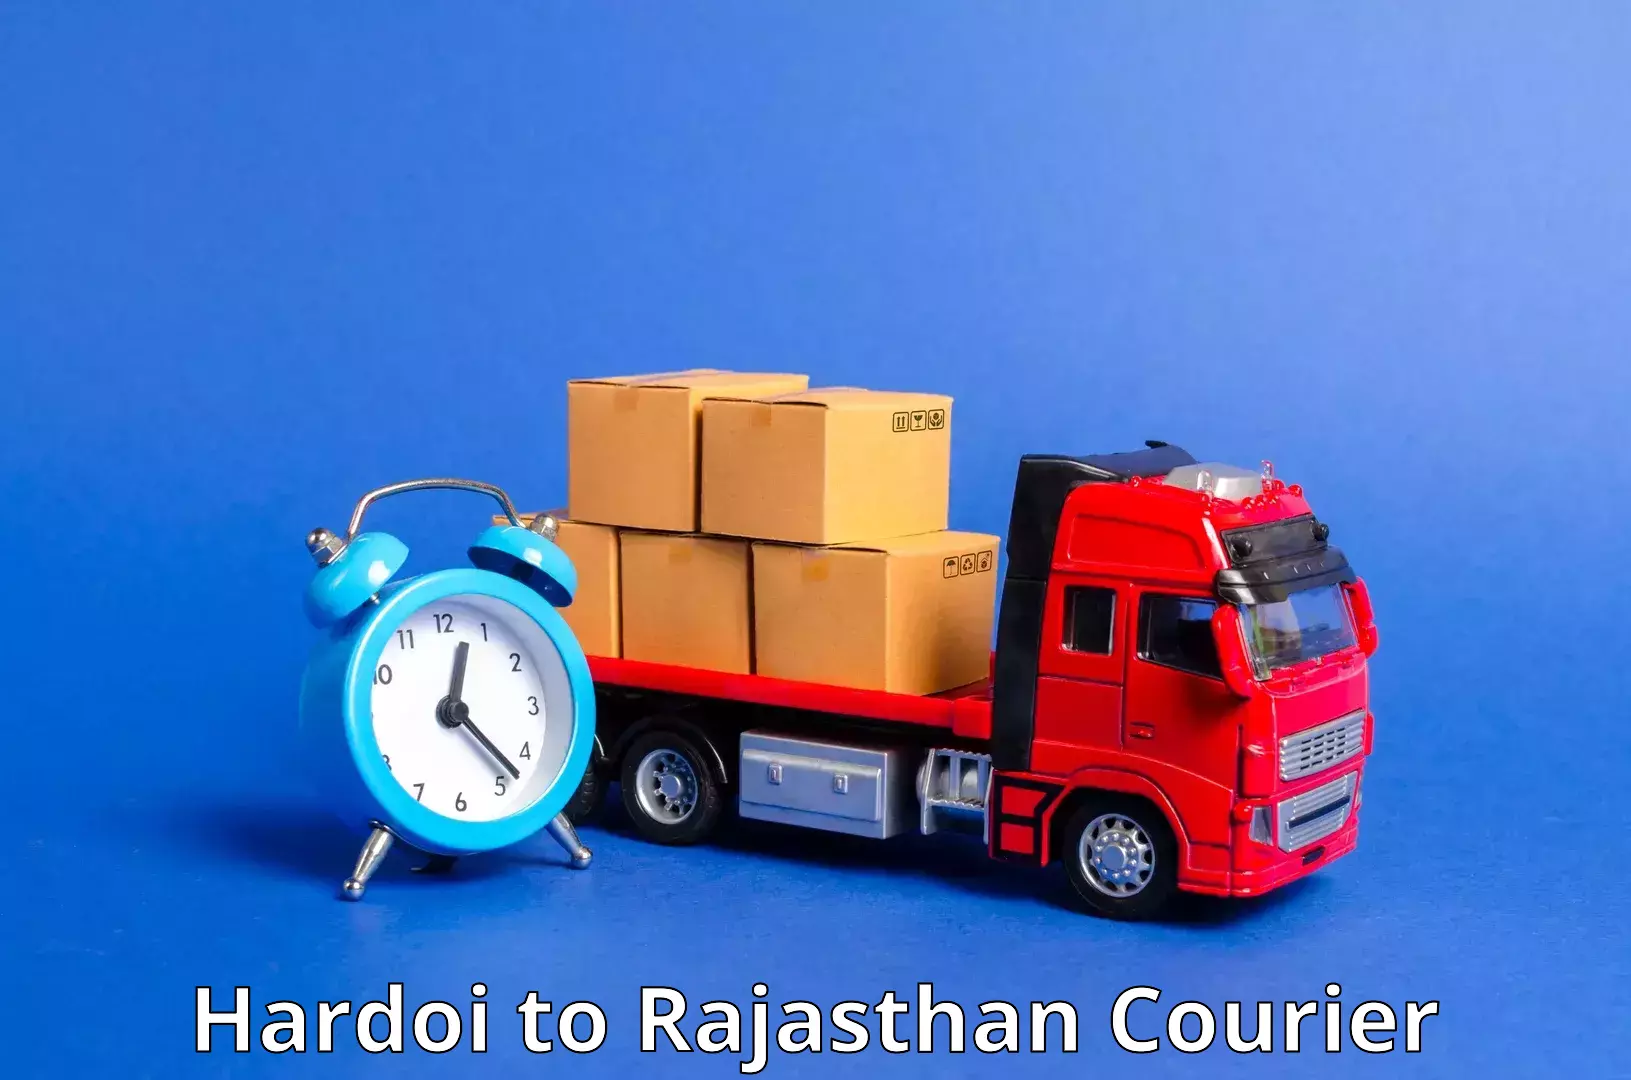 Reliable courier service Hardoi to Bhilwara